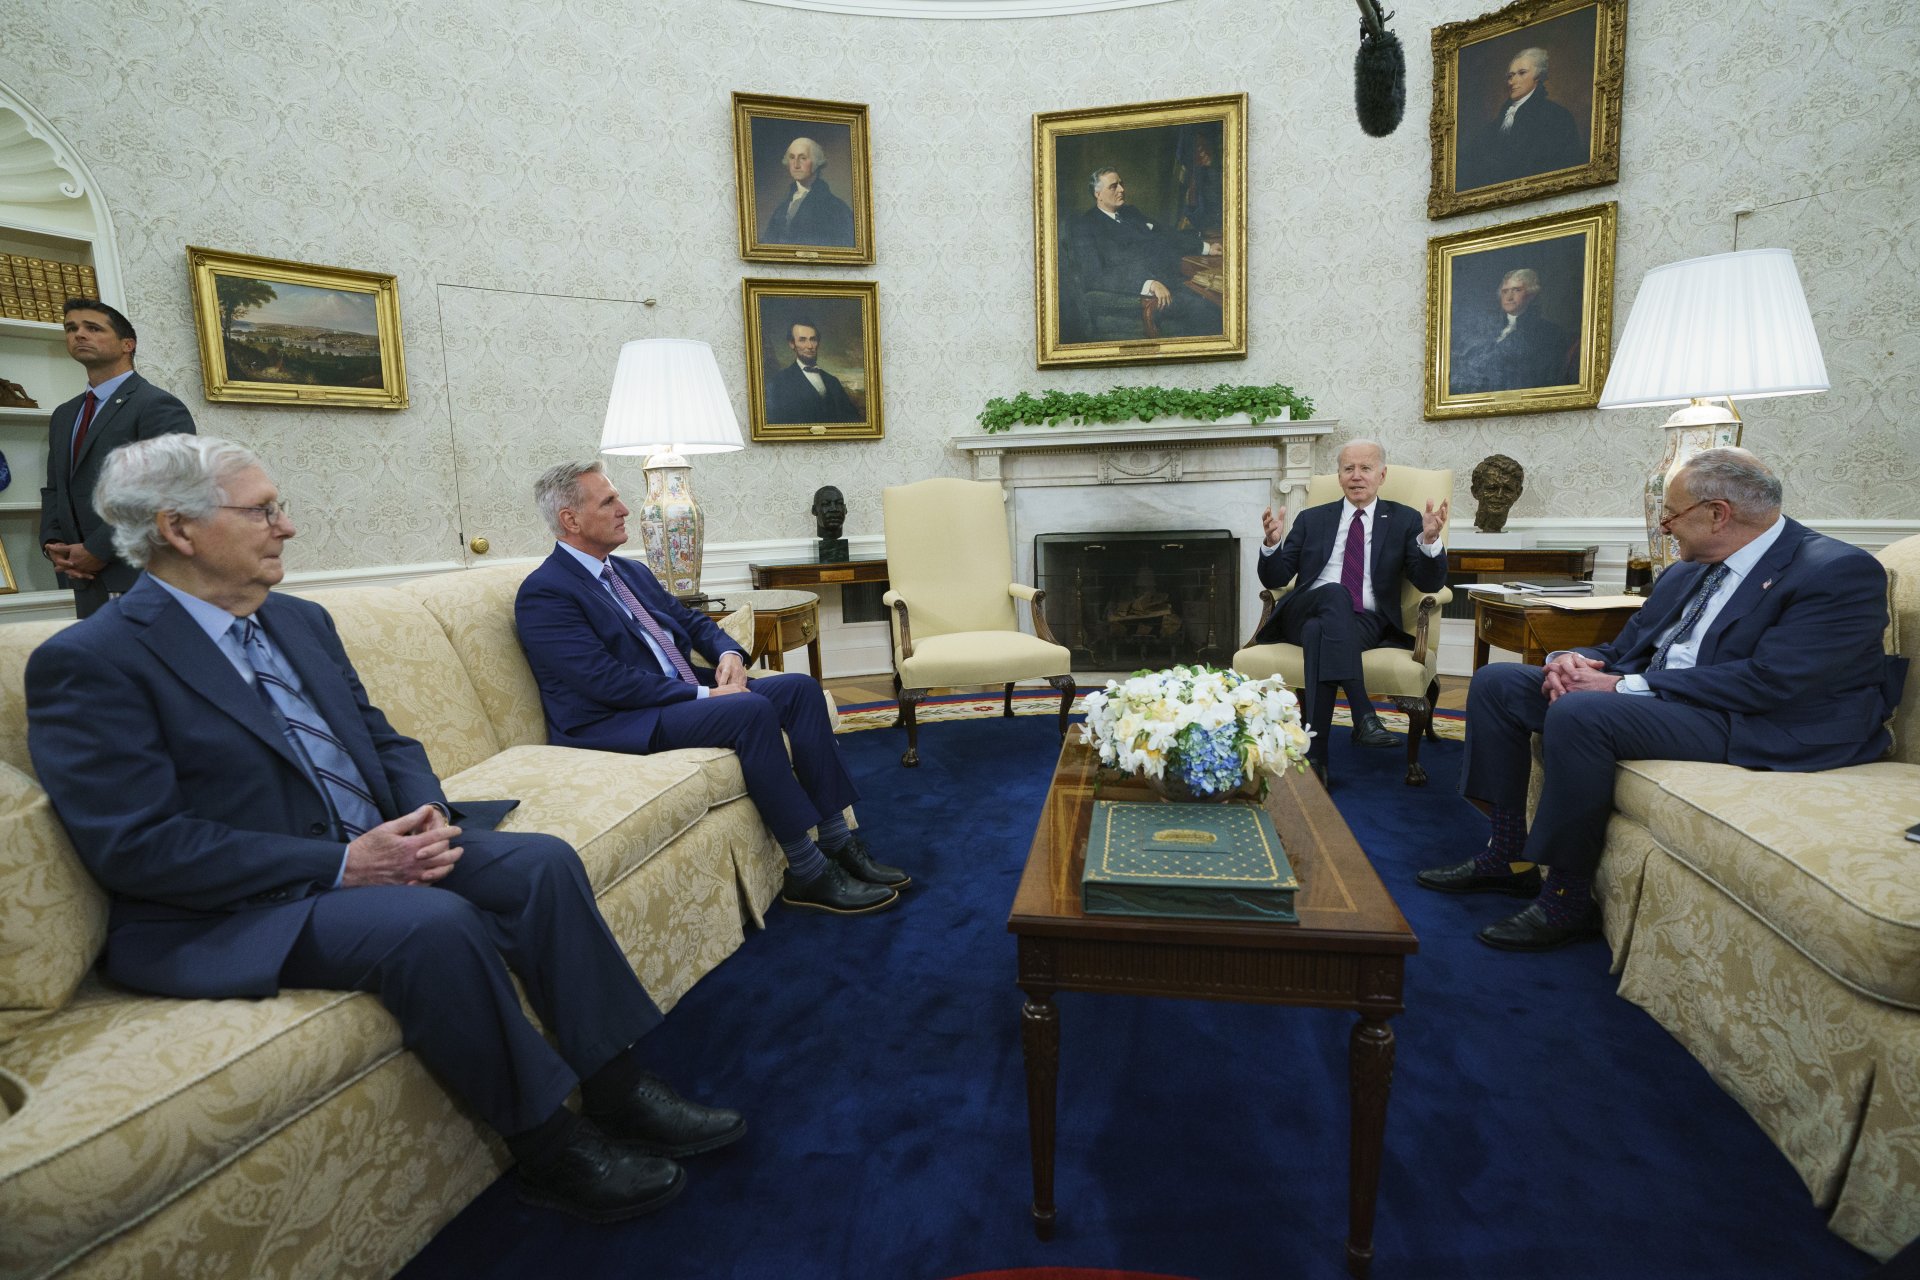 Джо Байдън разговаря с представители на републиканците - Мич Макконъл, Кевин Маккарти, и лидерът на мнозинството в Сената - демократа Чък Шумър (вдясно) по въпроса за държавния дълг